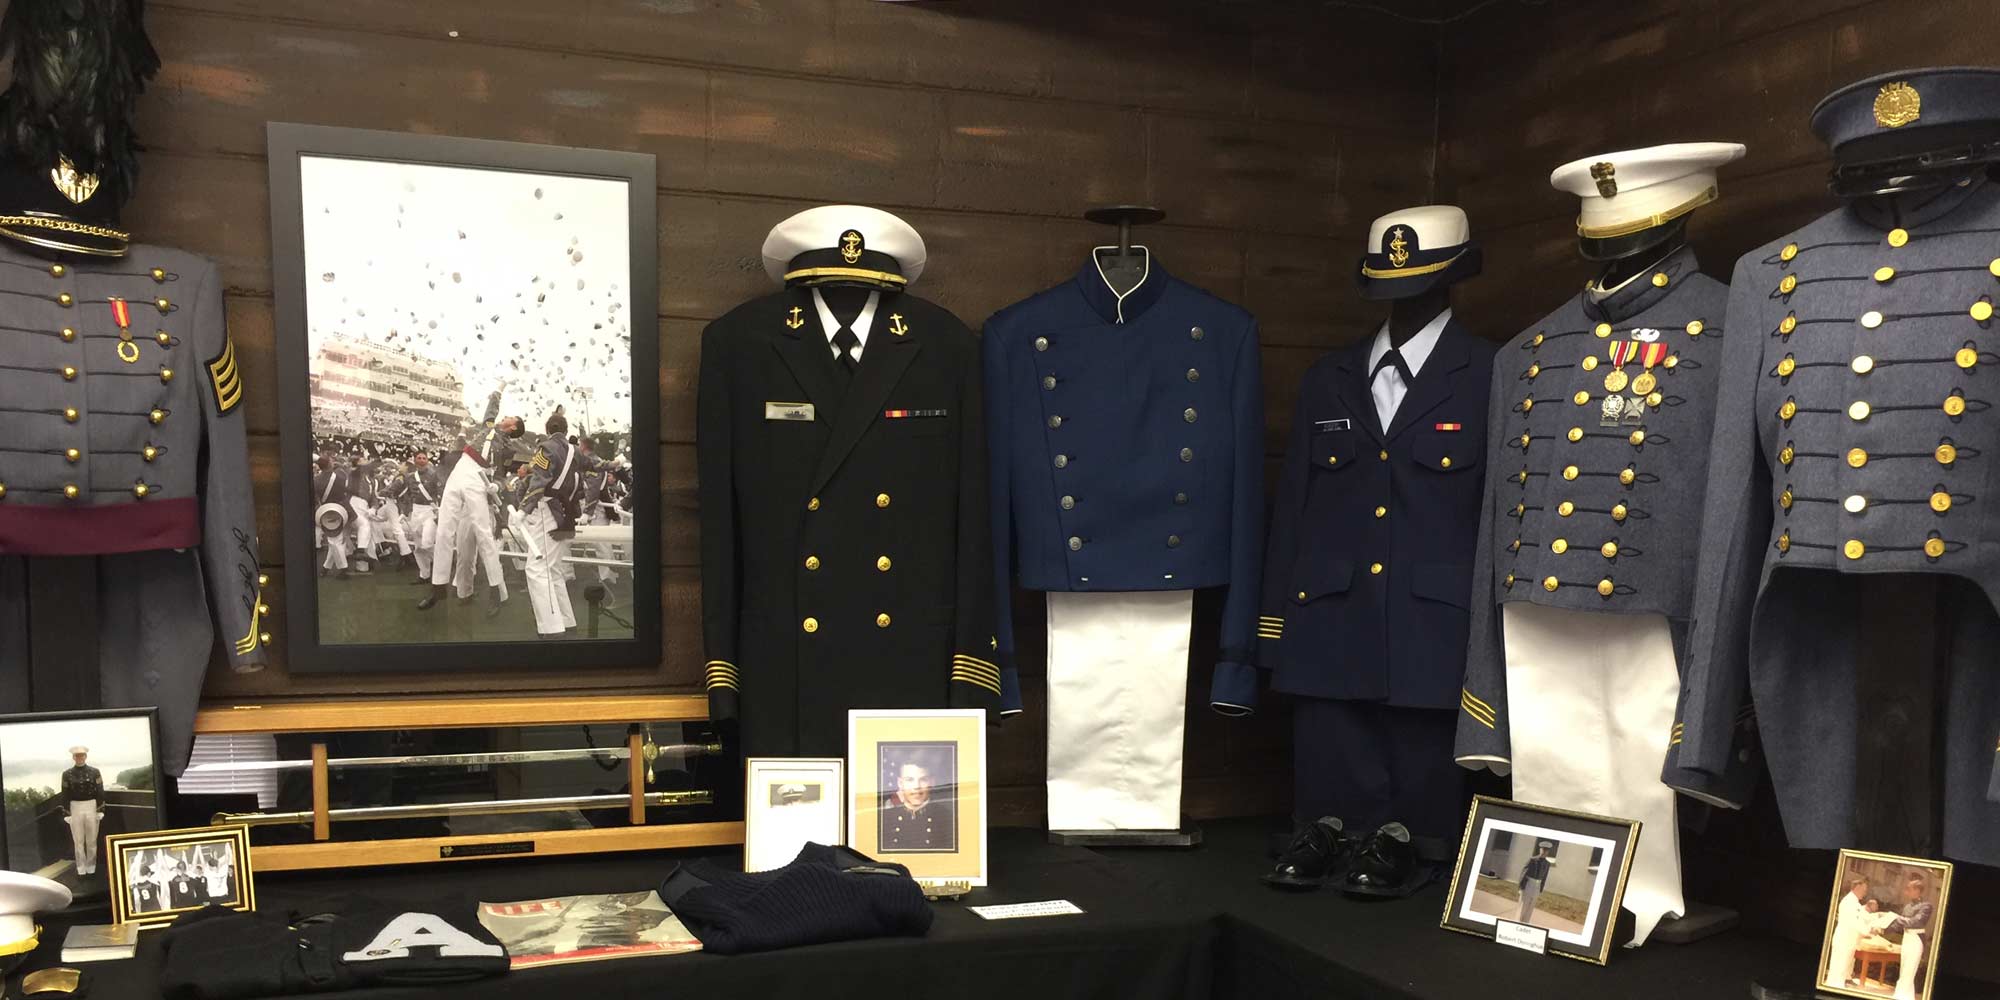 special exhibit of uniforms